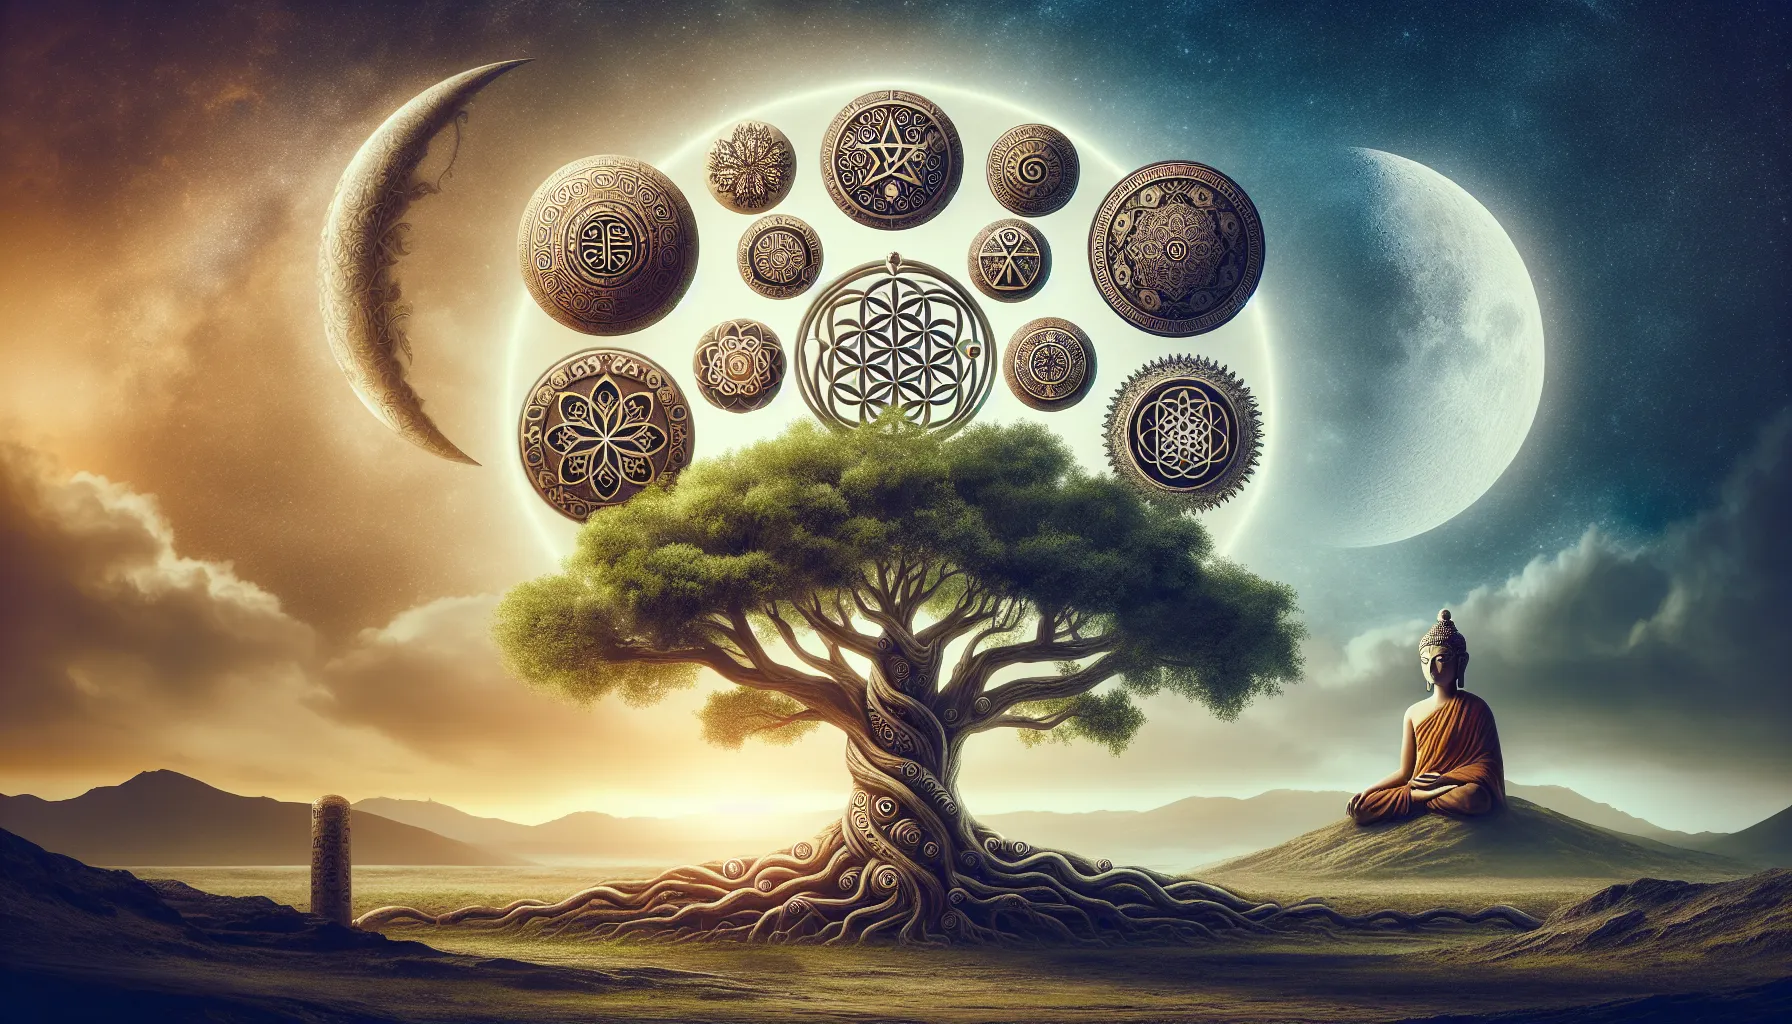 Representación simbólica del árbol de la vida en diferentes tradiciones culturales alrededor del mundo.